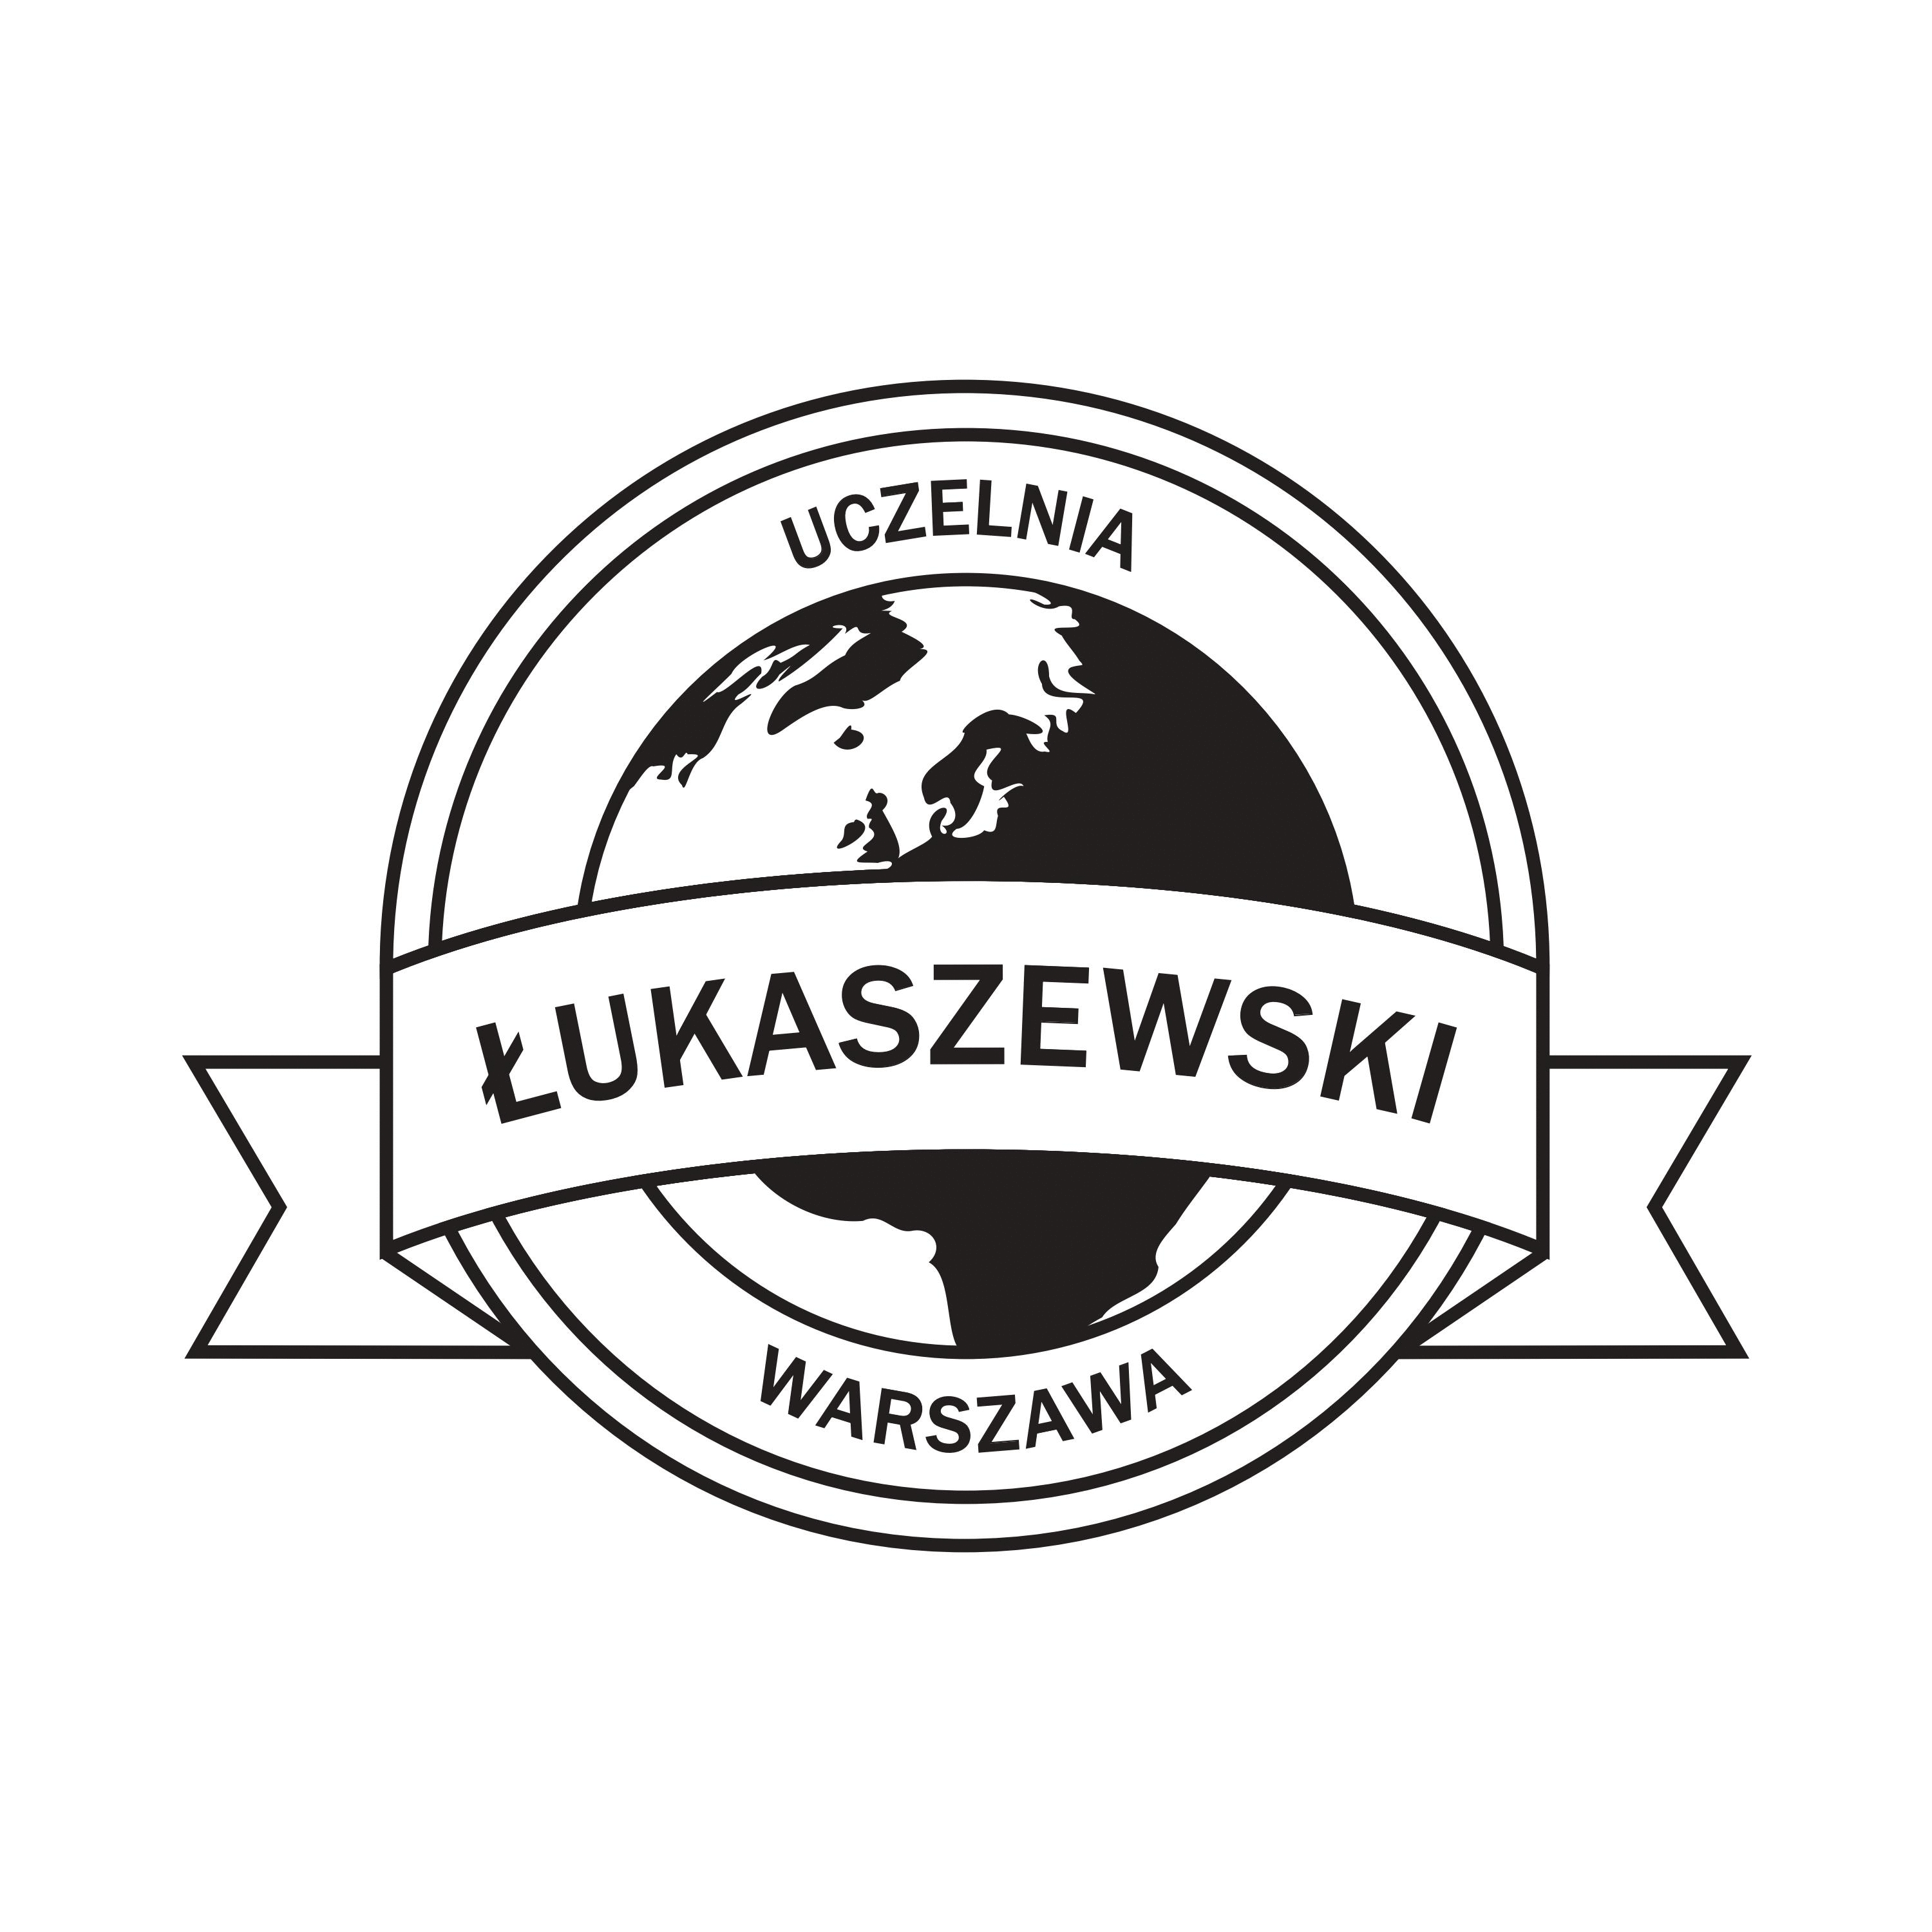 Uczelnia Łukaszewski (ULU) logo